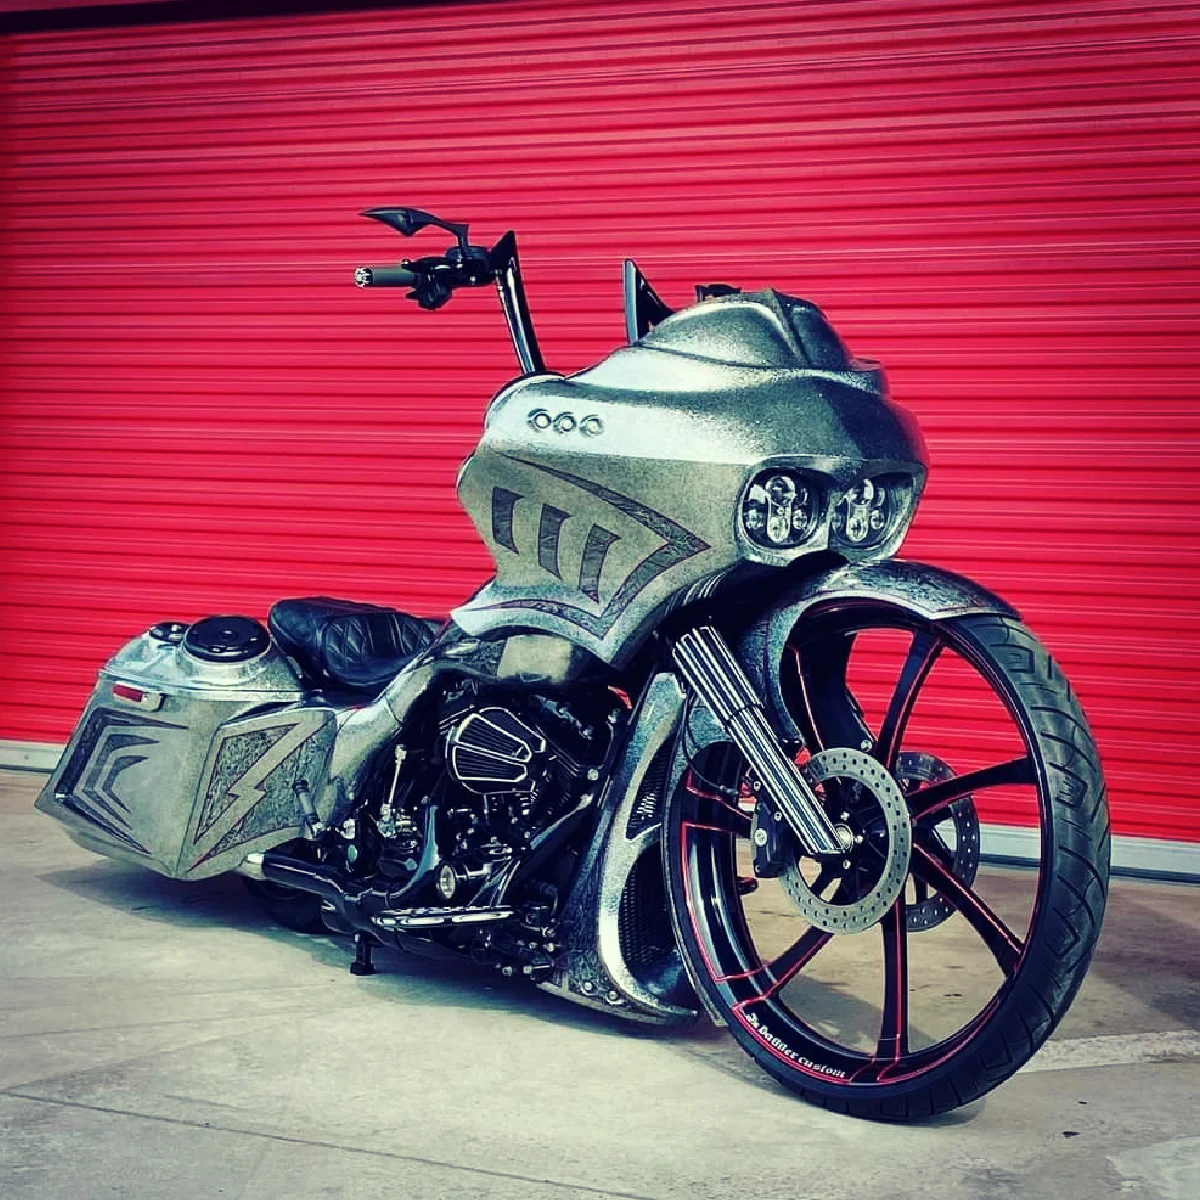 Harley-Davidson Road Glide bagger motorcycle with SMT OG.18 34" big wheel